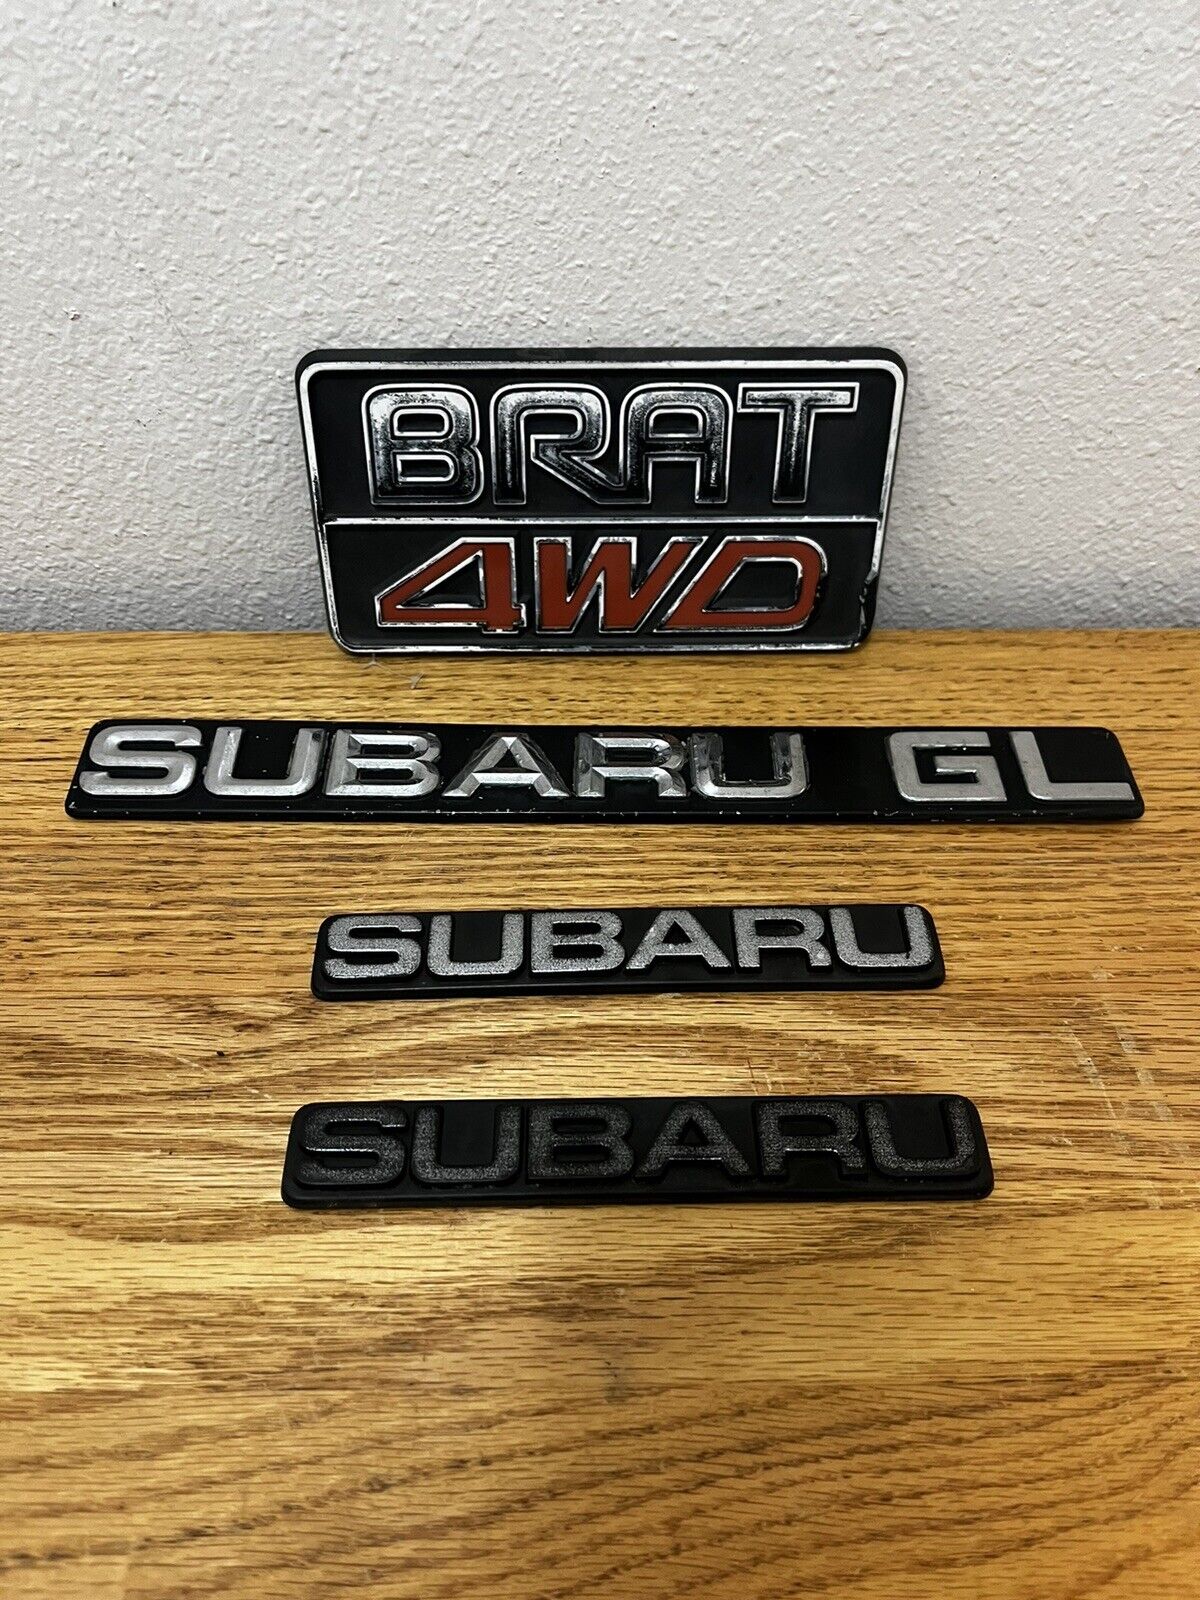 Subaru Brat Emblems Fits 82-87 4 Piece Subaru Brat Emblem Set Original Brat